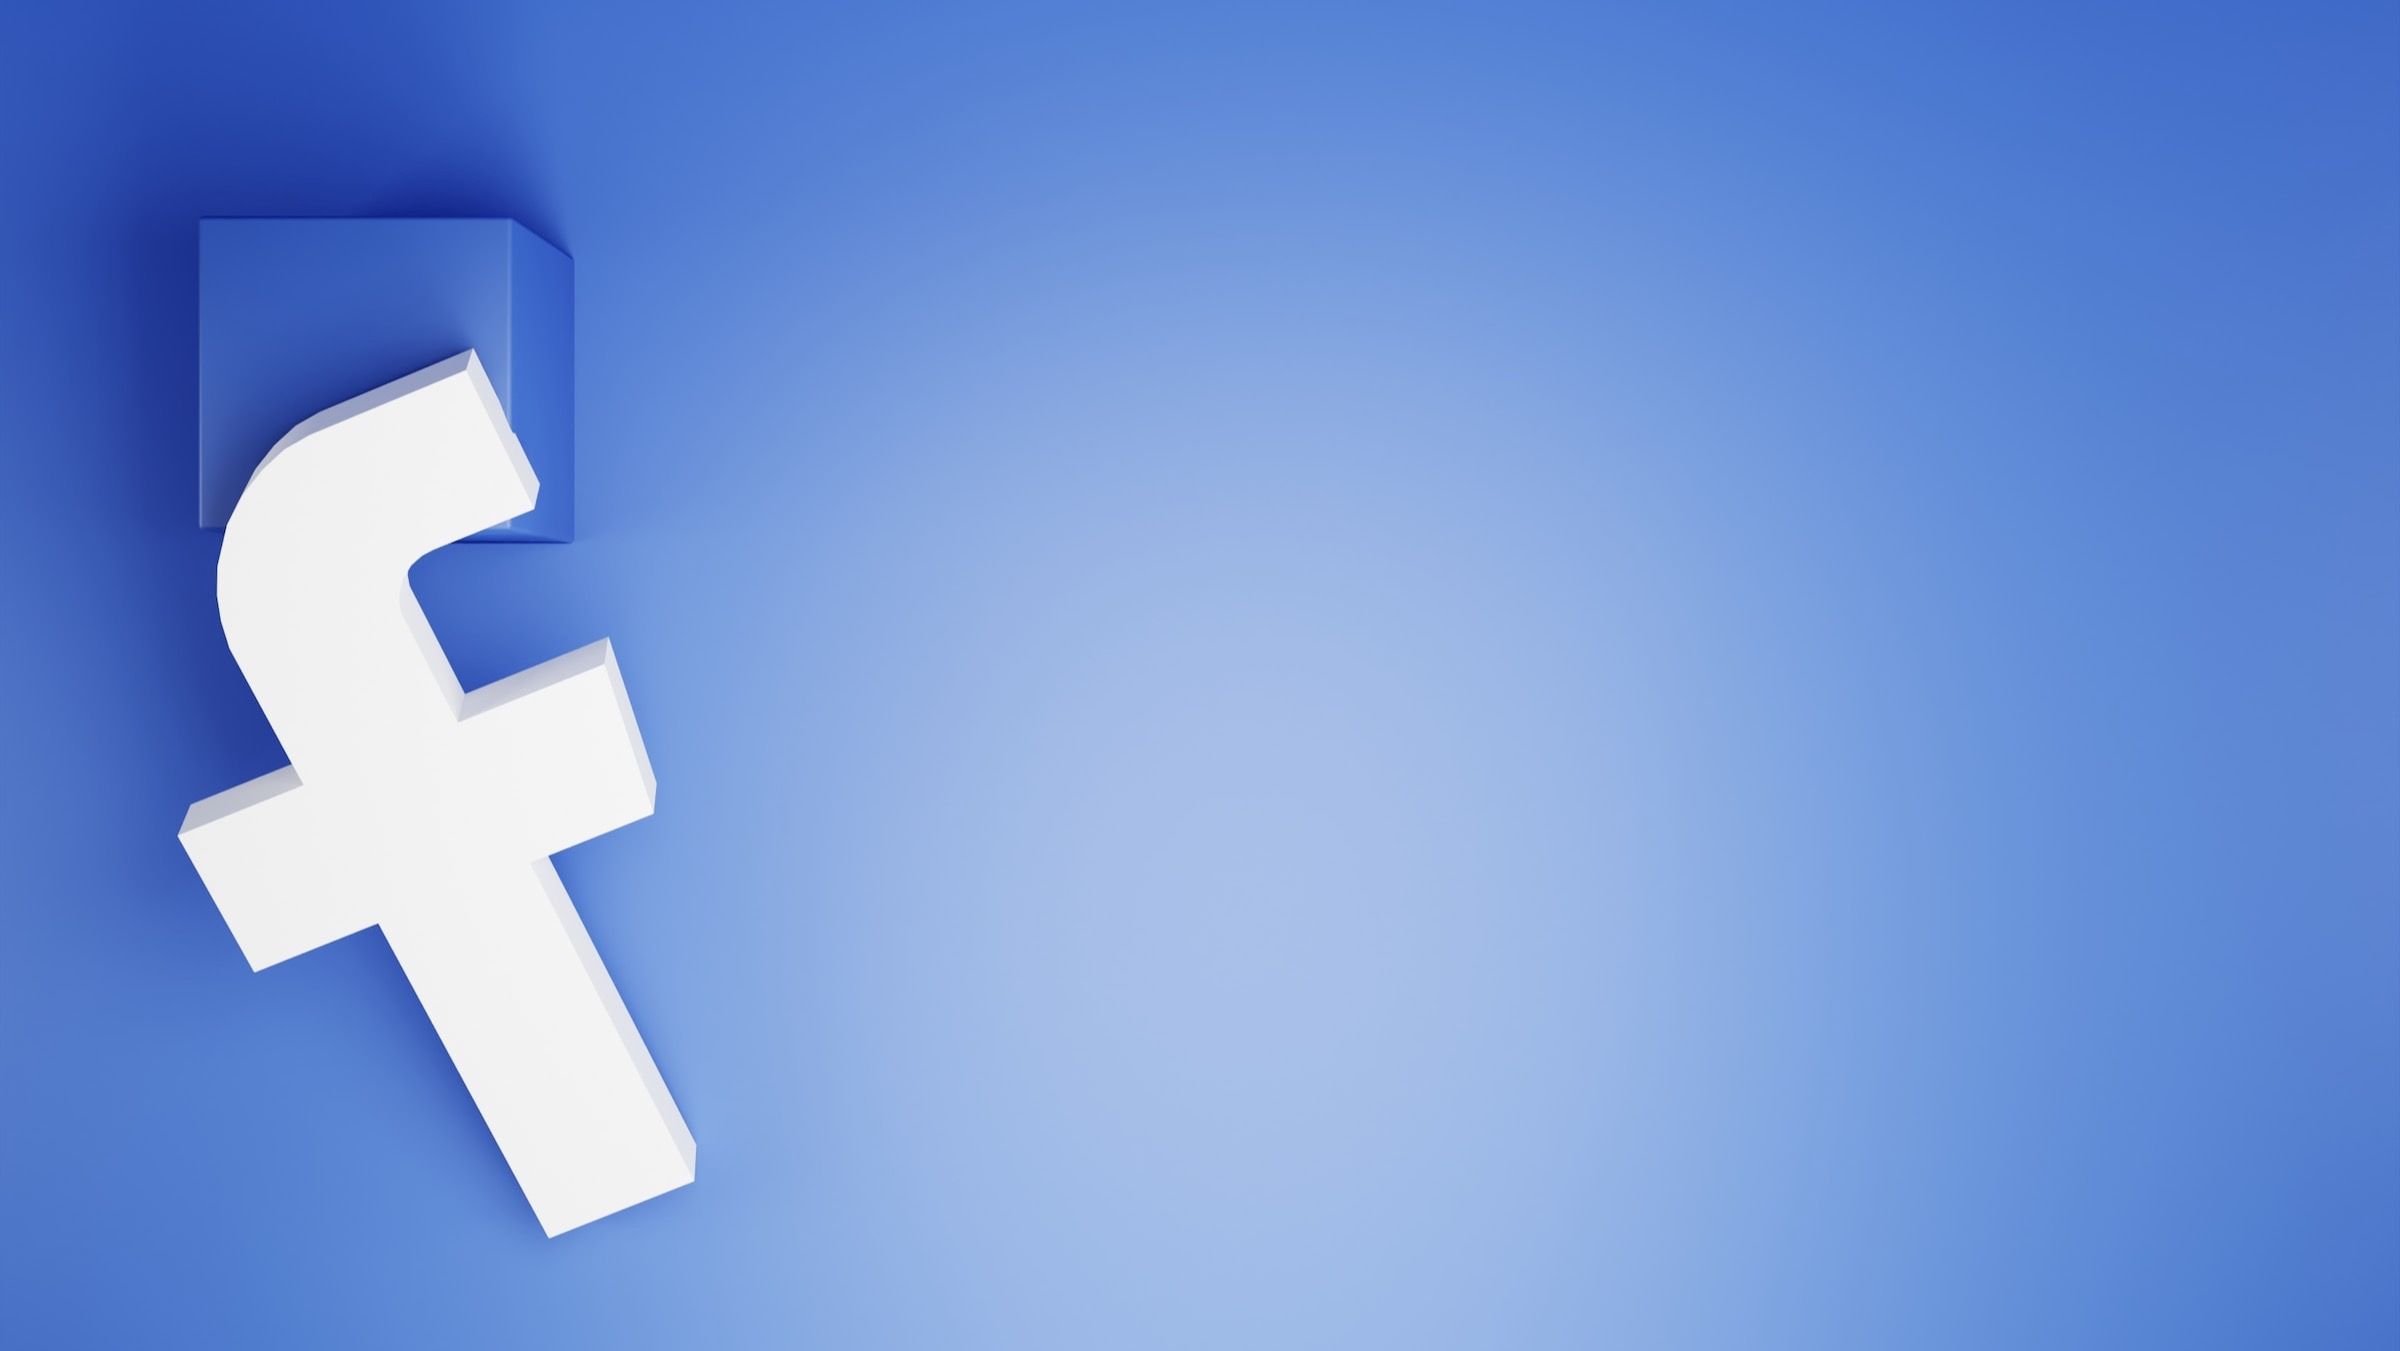 Um logotipo 3D do Facebook no lado esquerdo da imagem com fundo azul